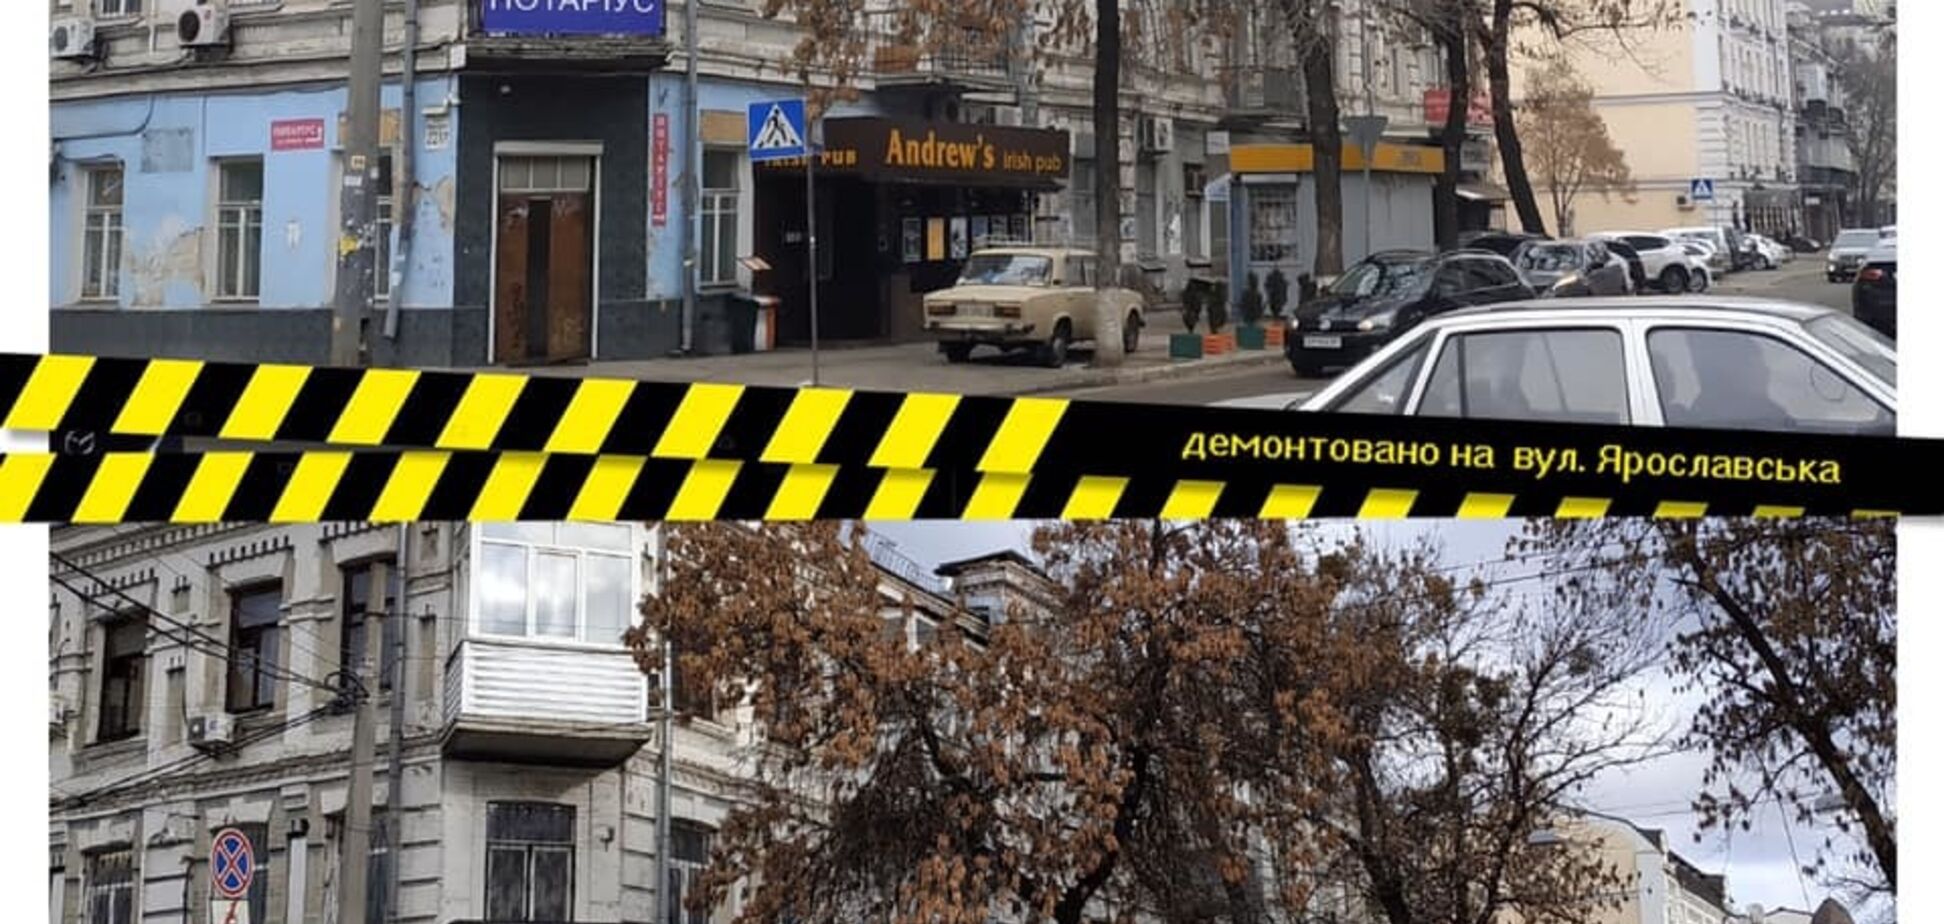 Повернули історичний вигляд: центр Києва очистили від реклами. Фото до і після